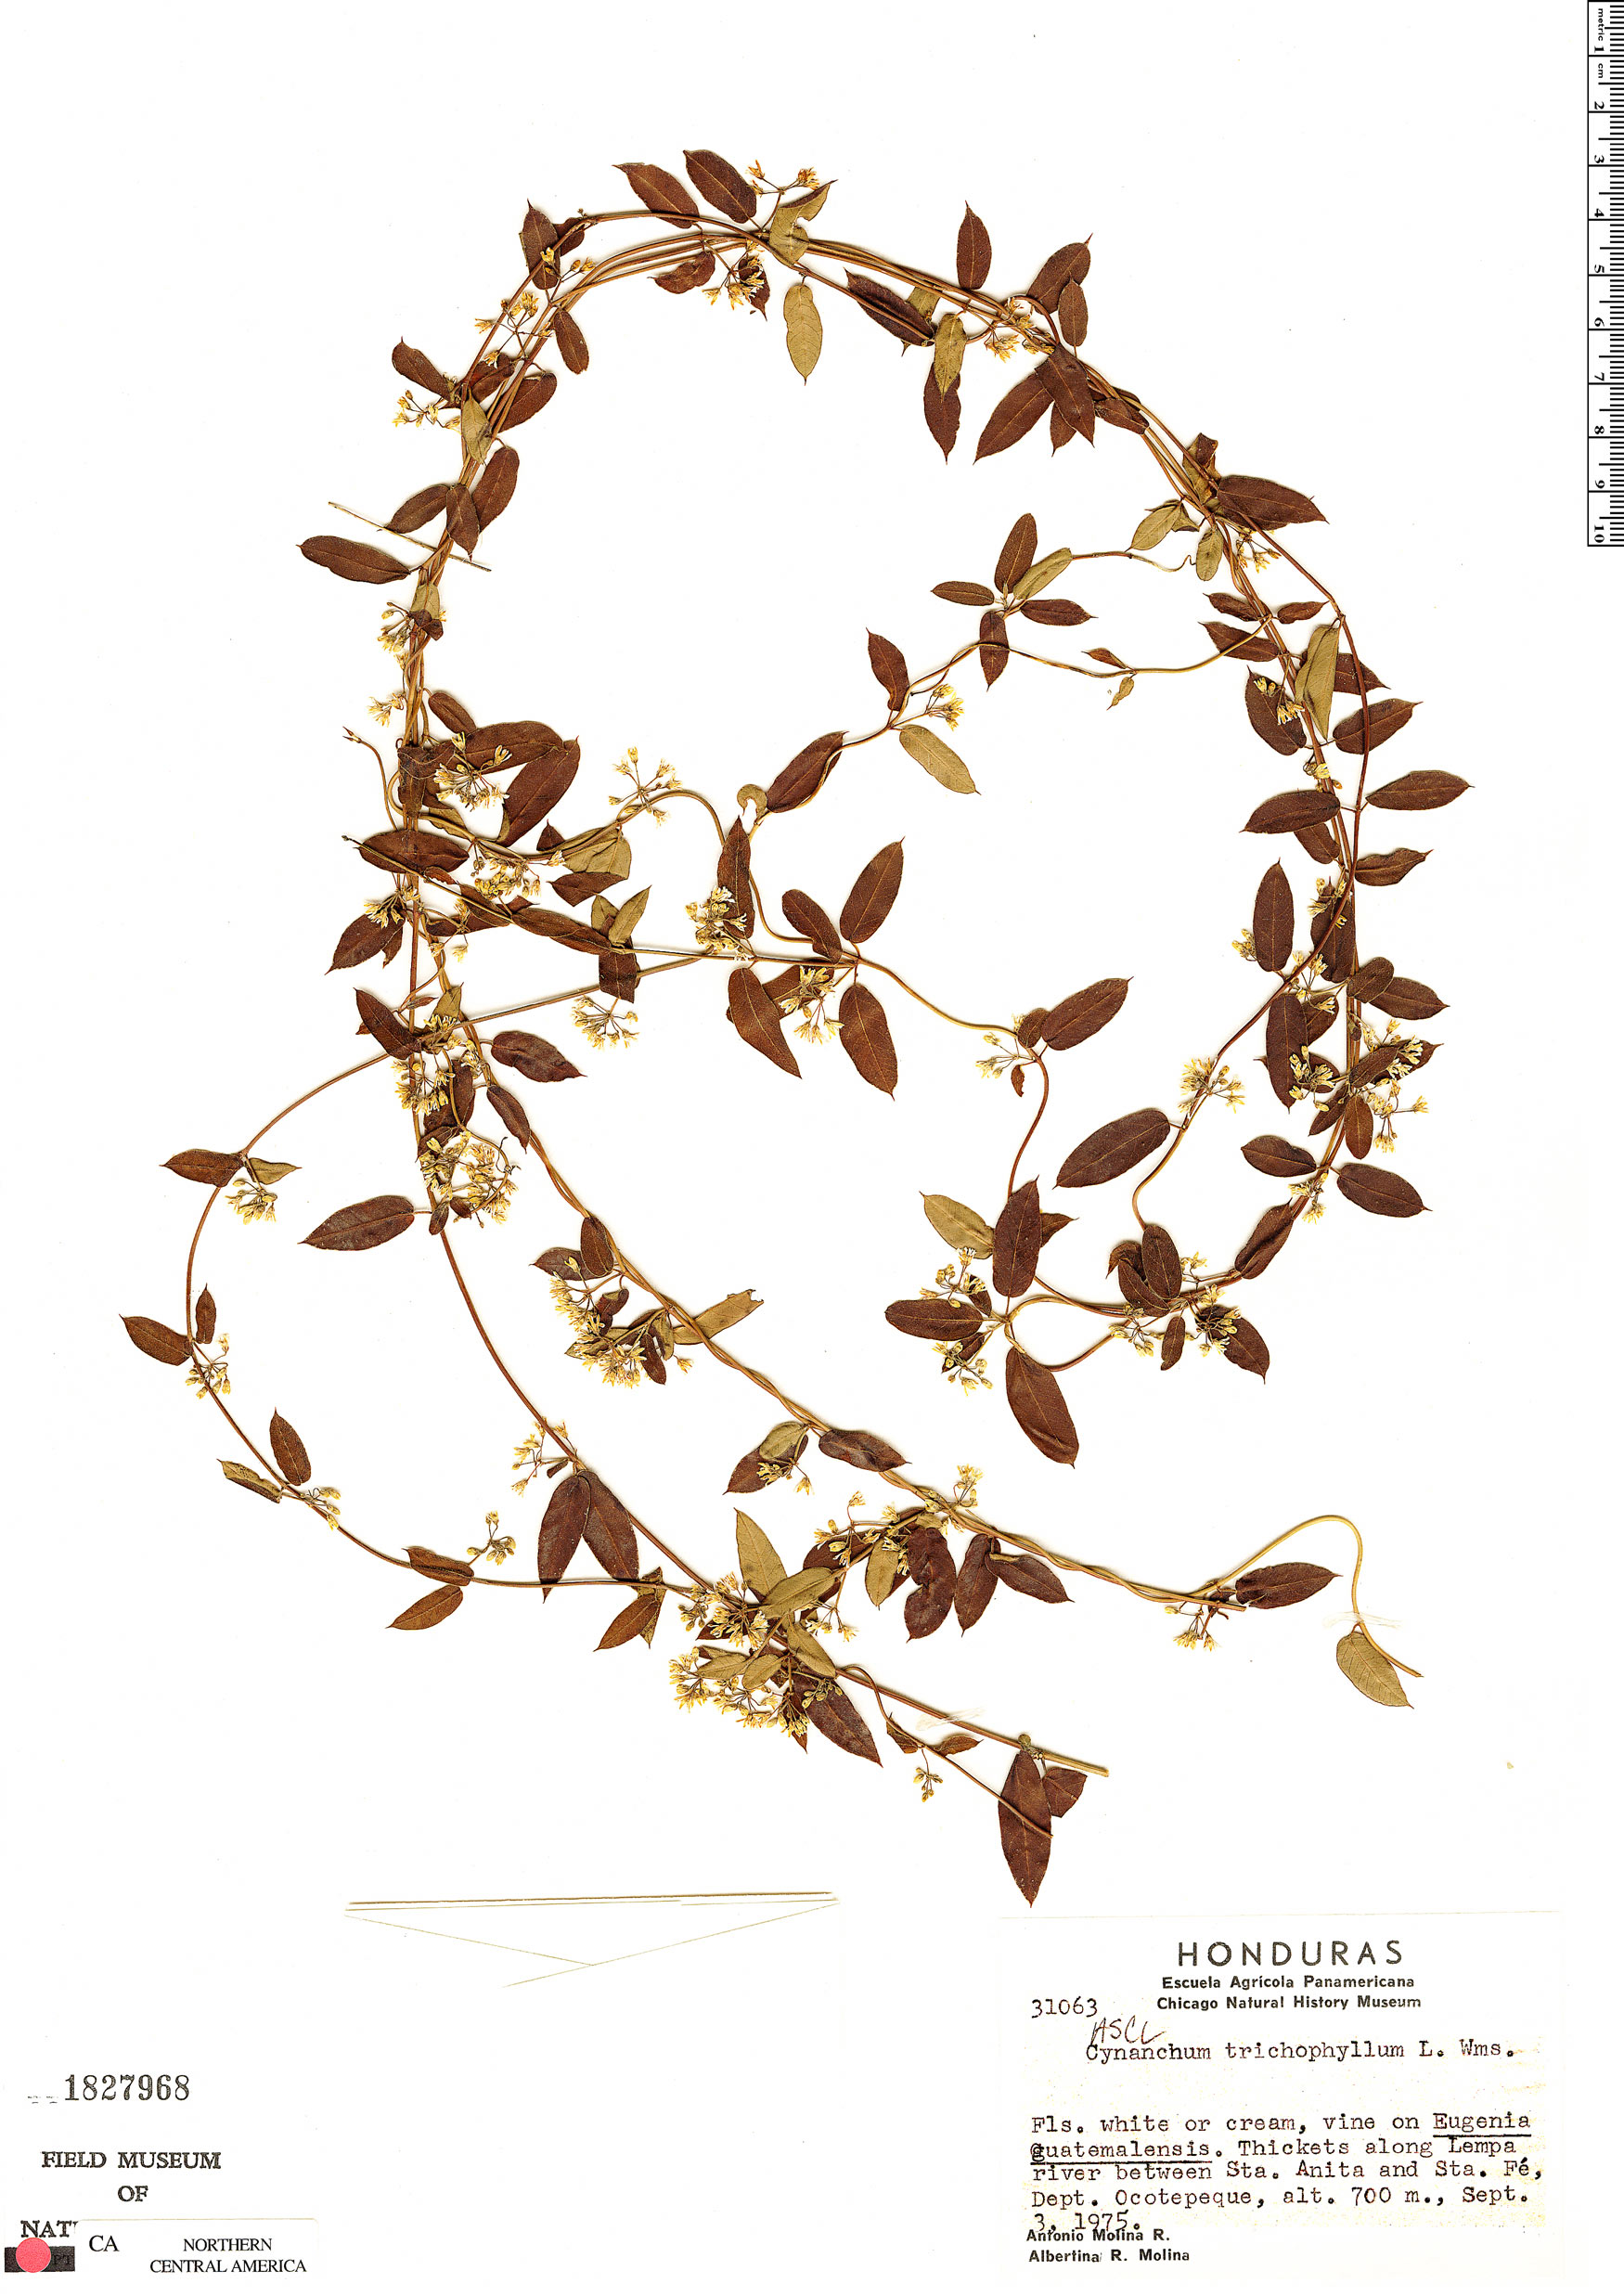 Metastelma trichophyllum image